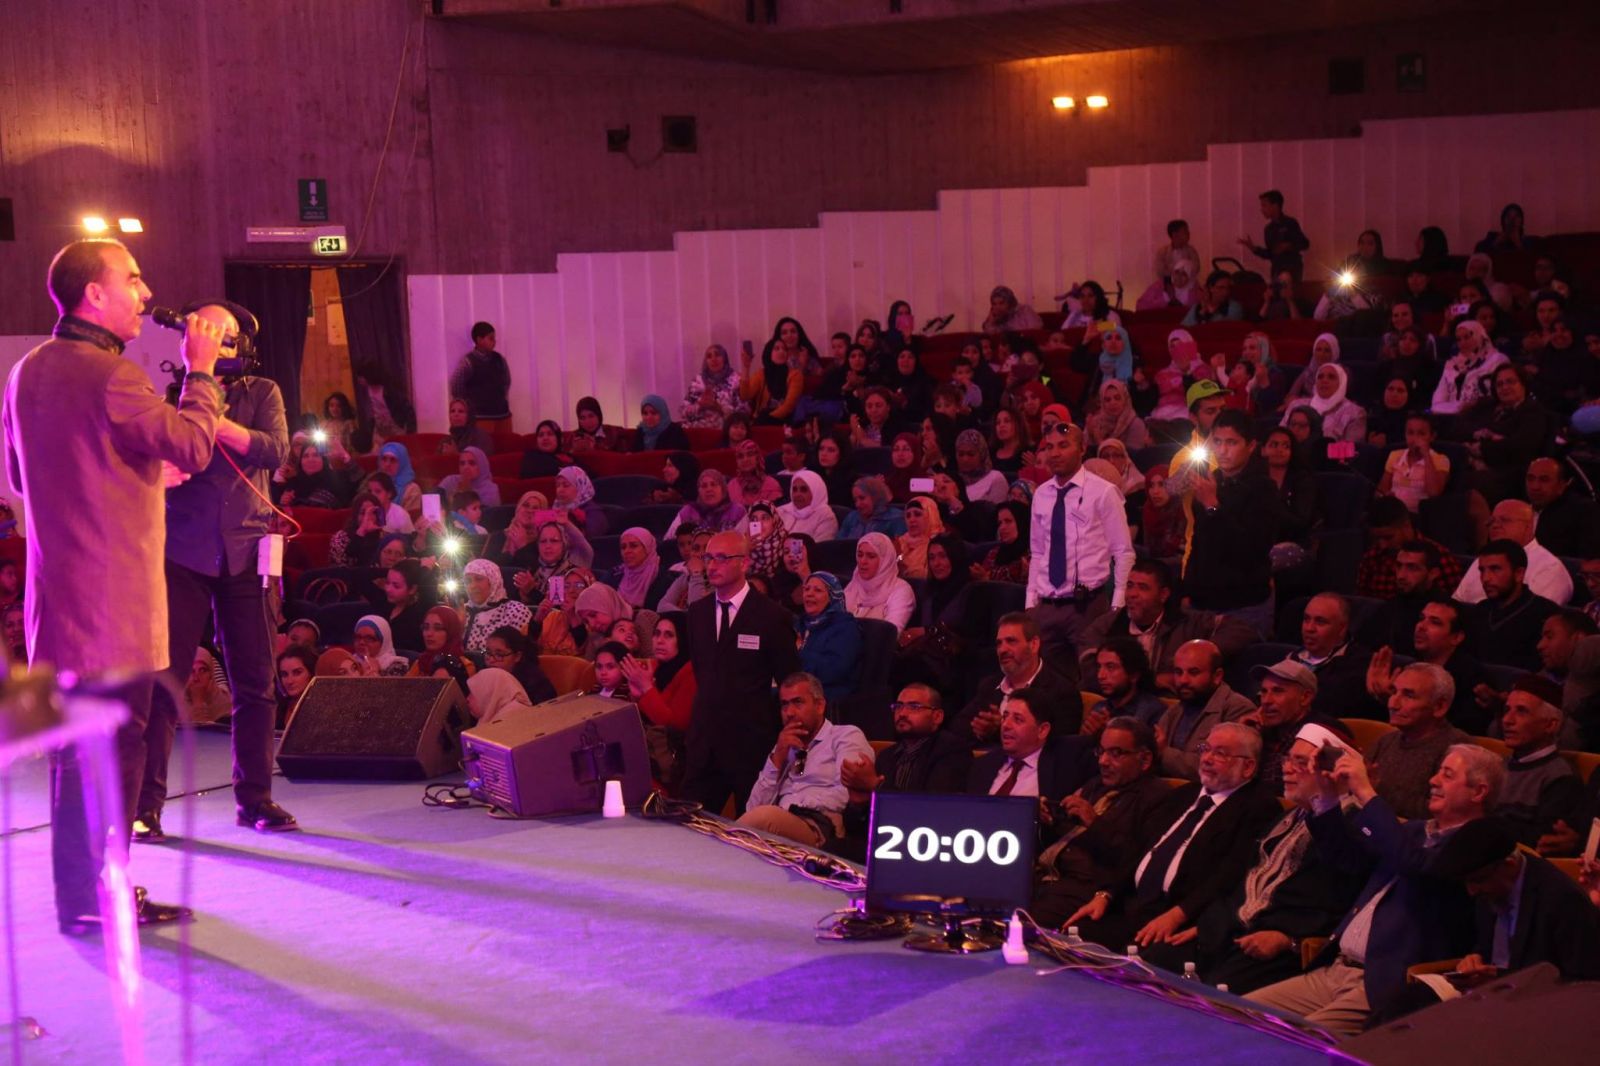 Sn. Adnan Oktar’ın Sicilya’da düzenlenen “İslam ve Barış” konulu konferanstaki konuşması 